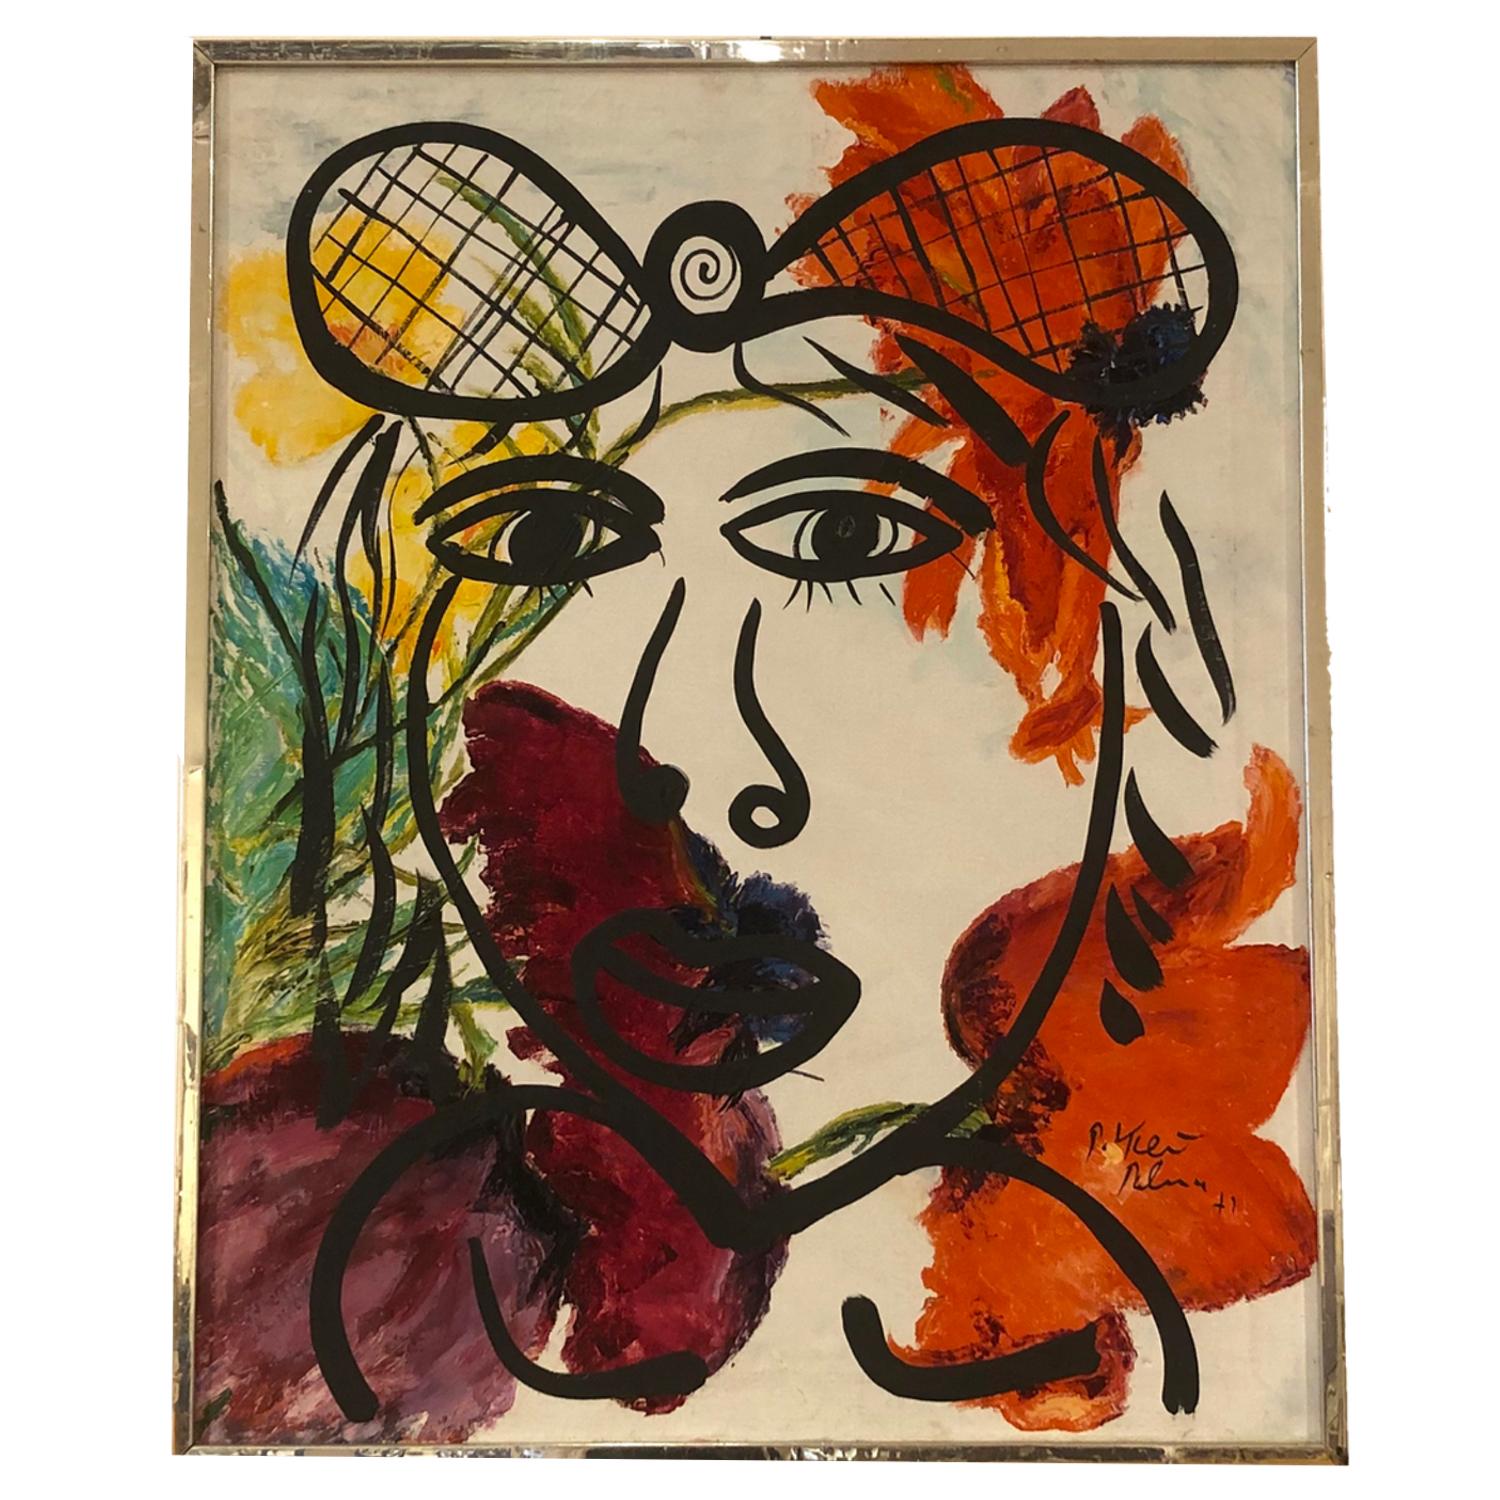 Peinture de portrait figurative abstraite colorée « Paloma 1972 » de Peter Keil 